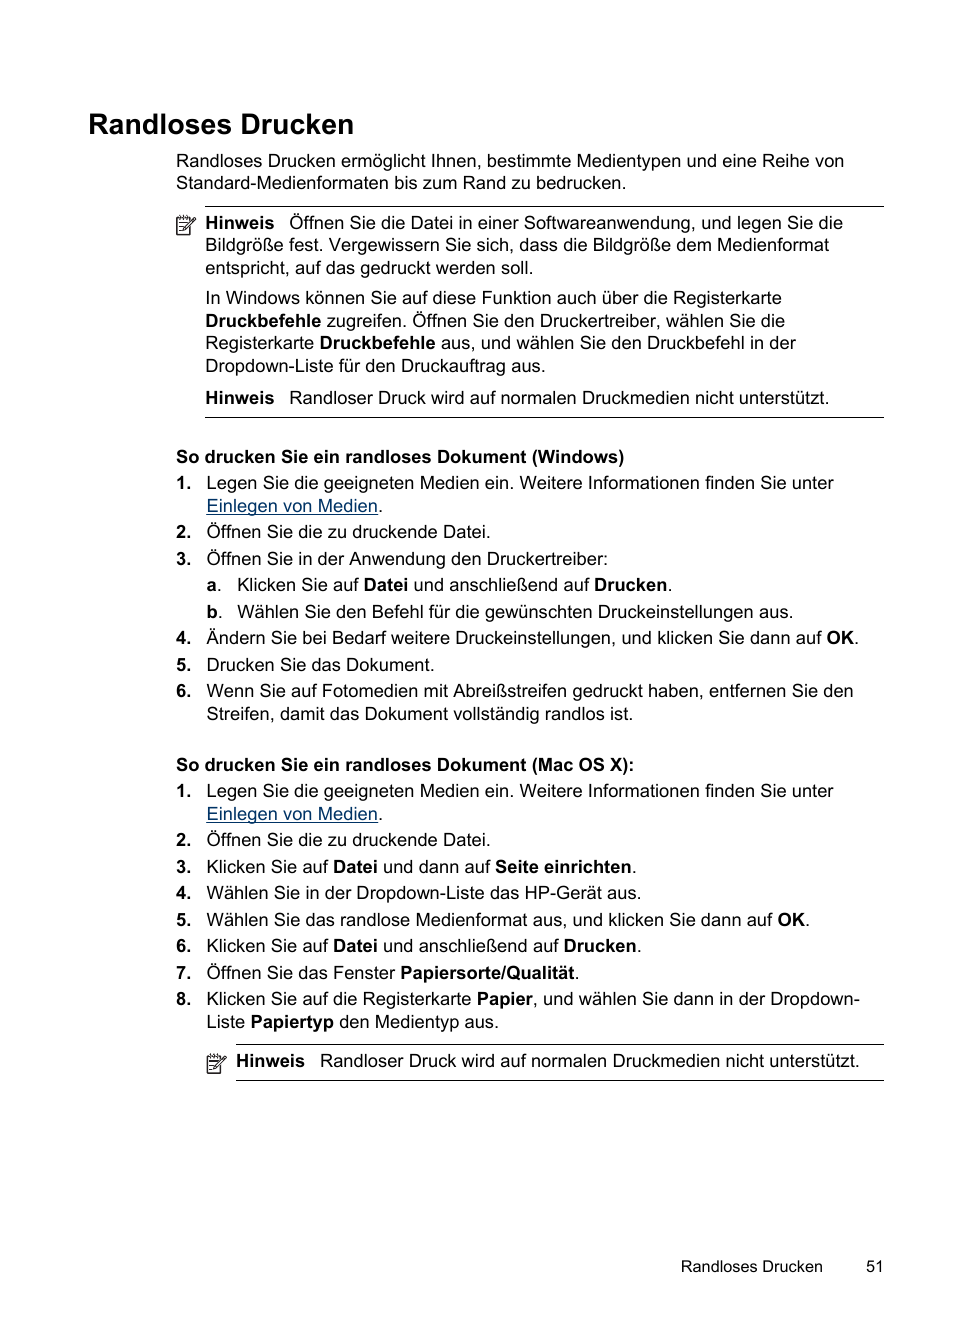 Randloses drucken | HP Officejet Pro 8500 Benutzerhandbuch | Seite 55 / 342